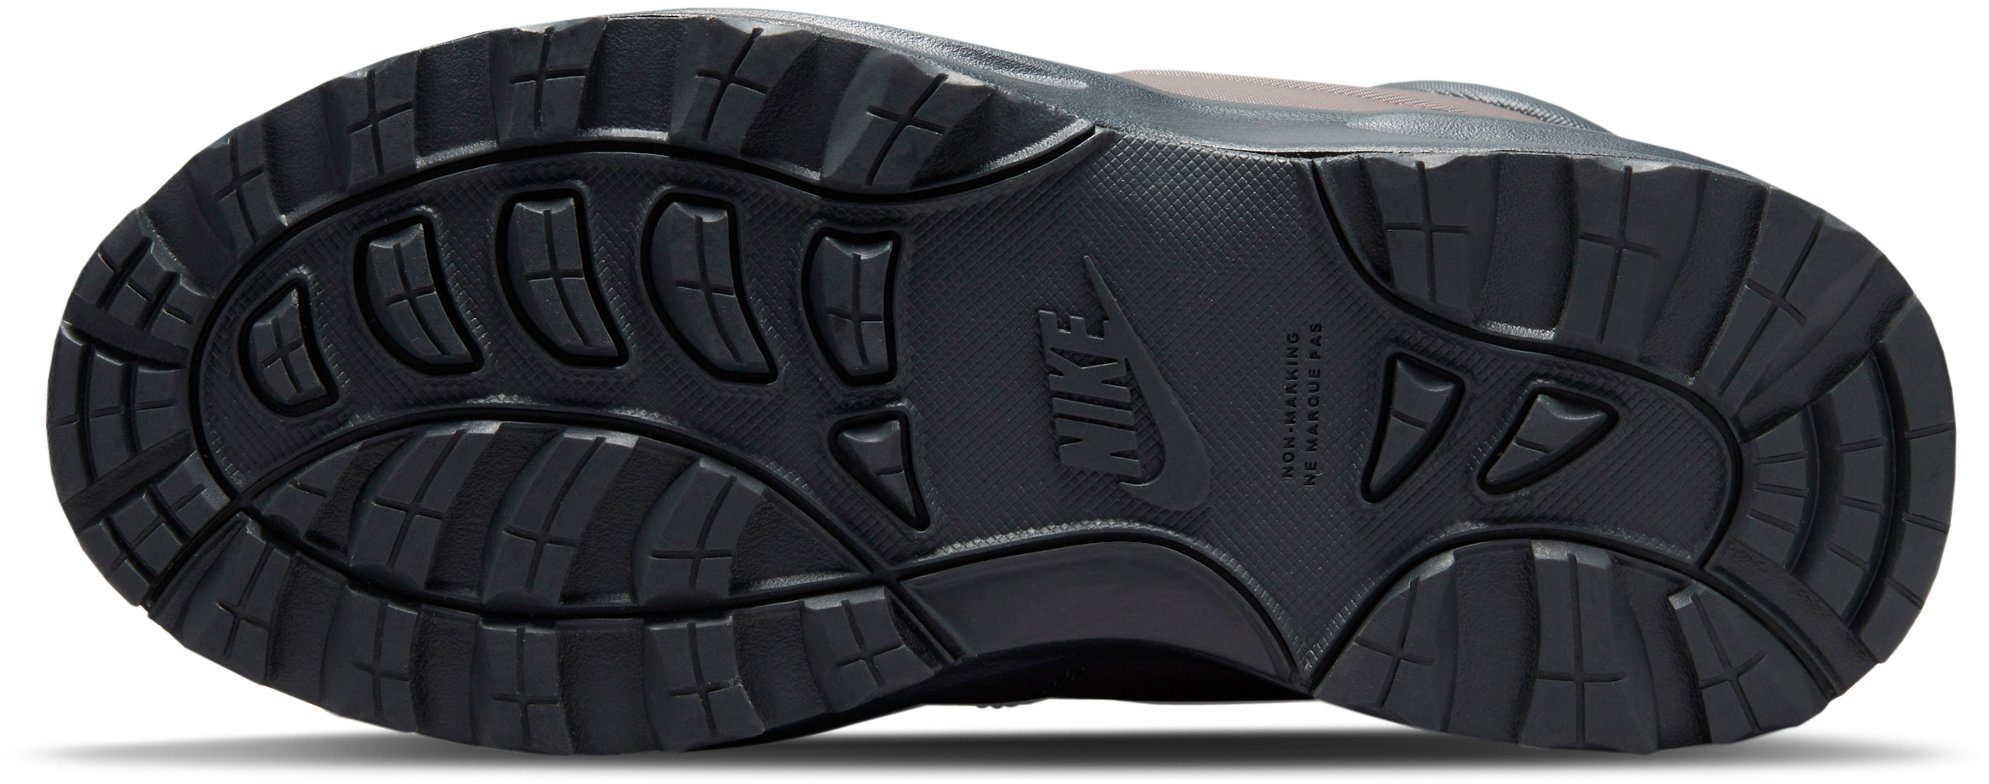 Nike MANOA LTR Sportswear Winterboots